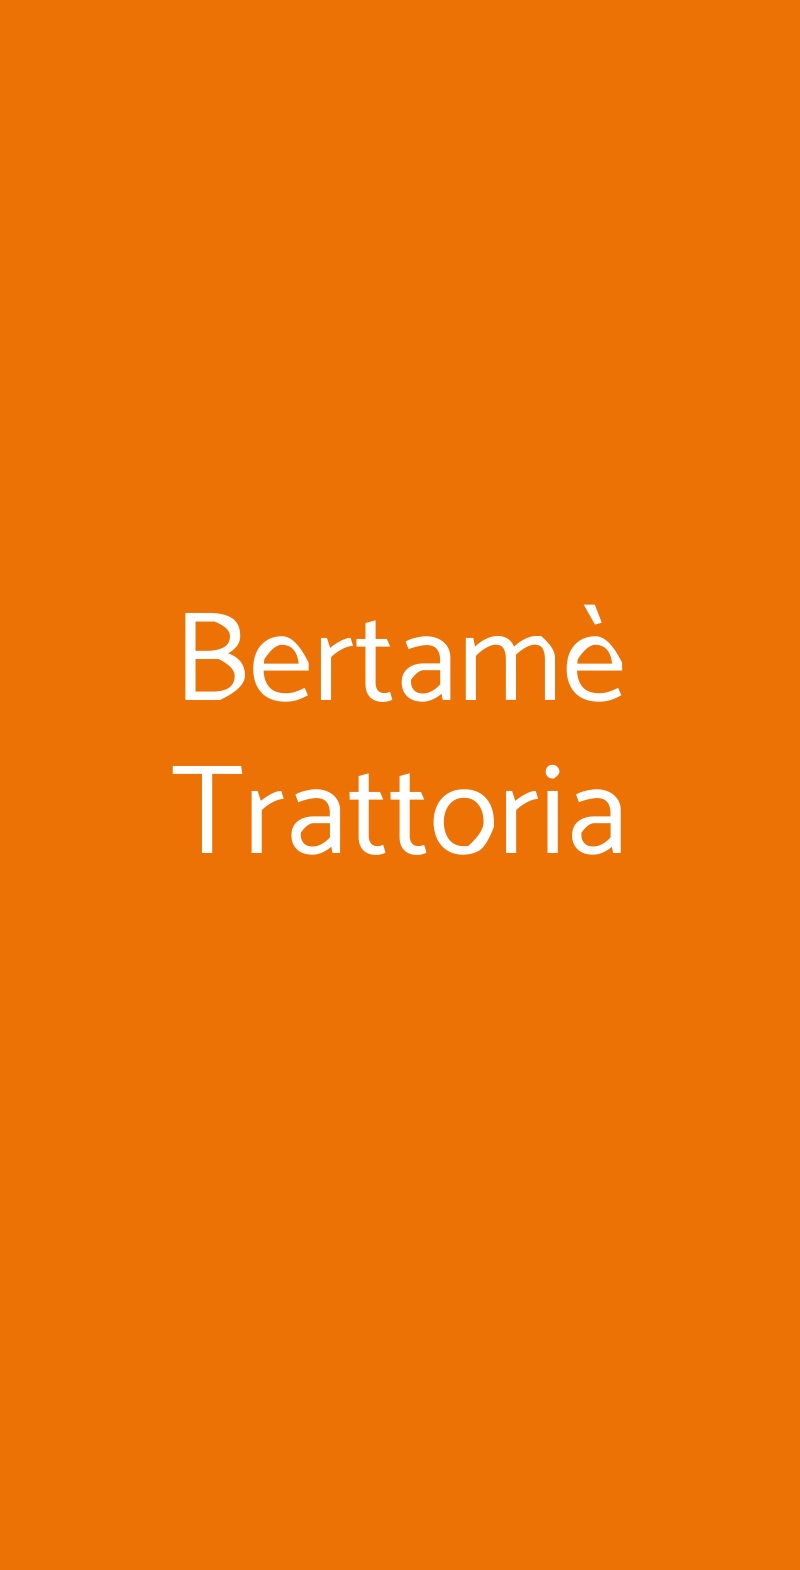 Bertamè Trattoria Milano menù 1 pagina